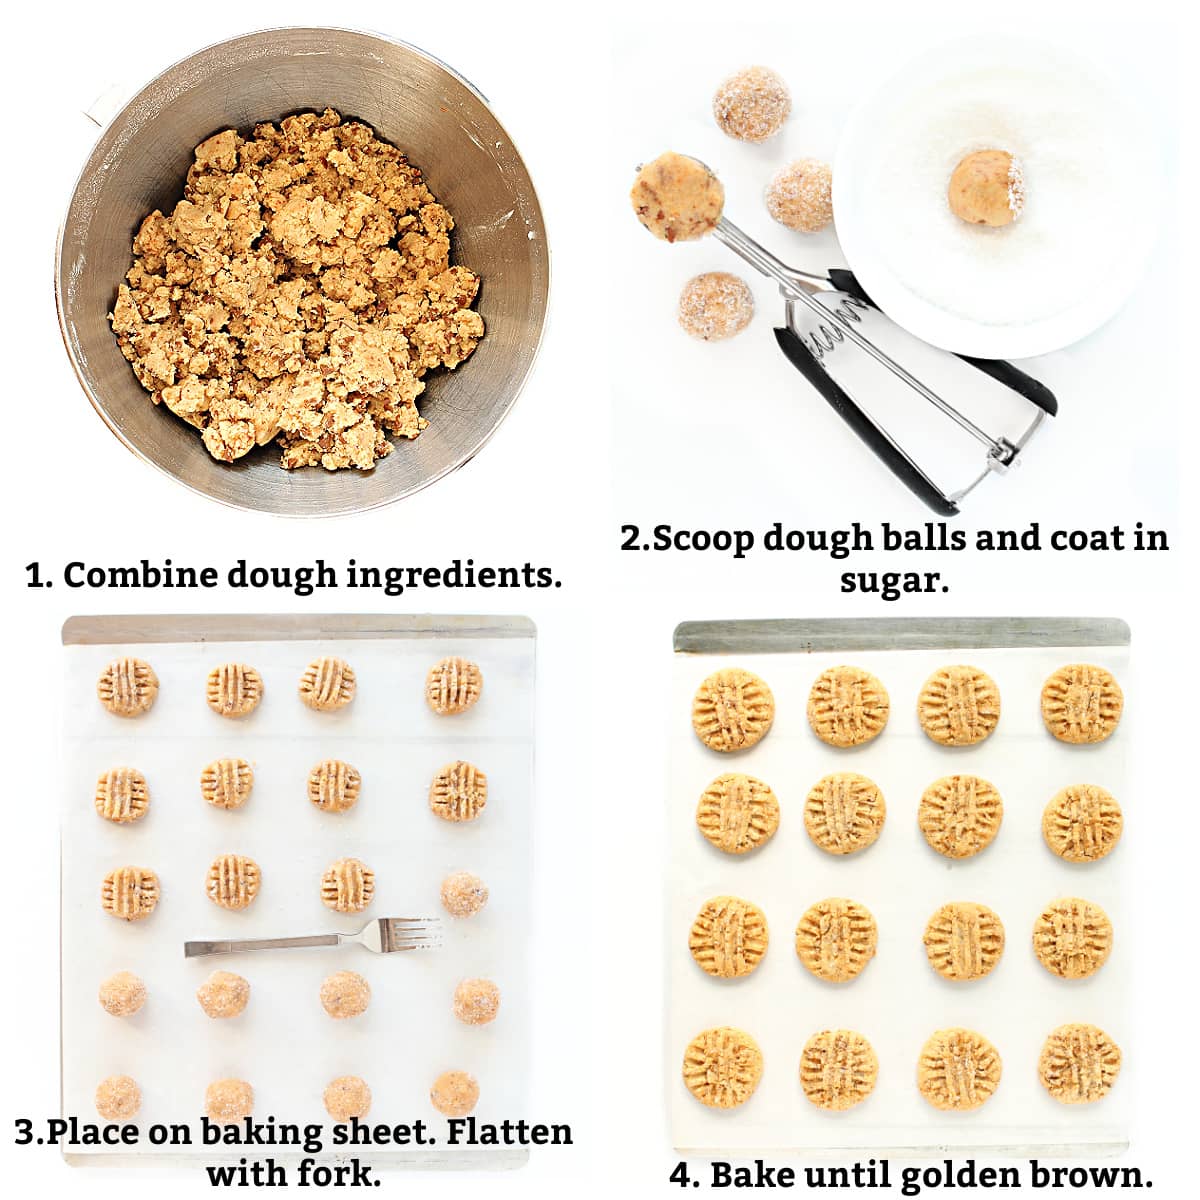 Instructions; combine ingredients, scoop dough balls and sugar coat, flatten with fork, bake until golden brown.